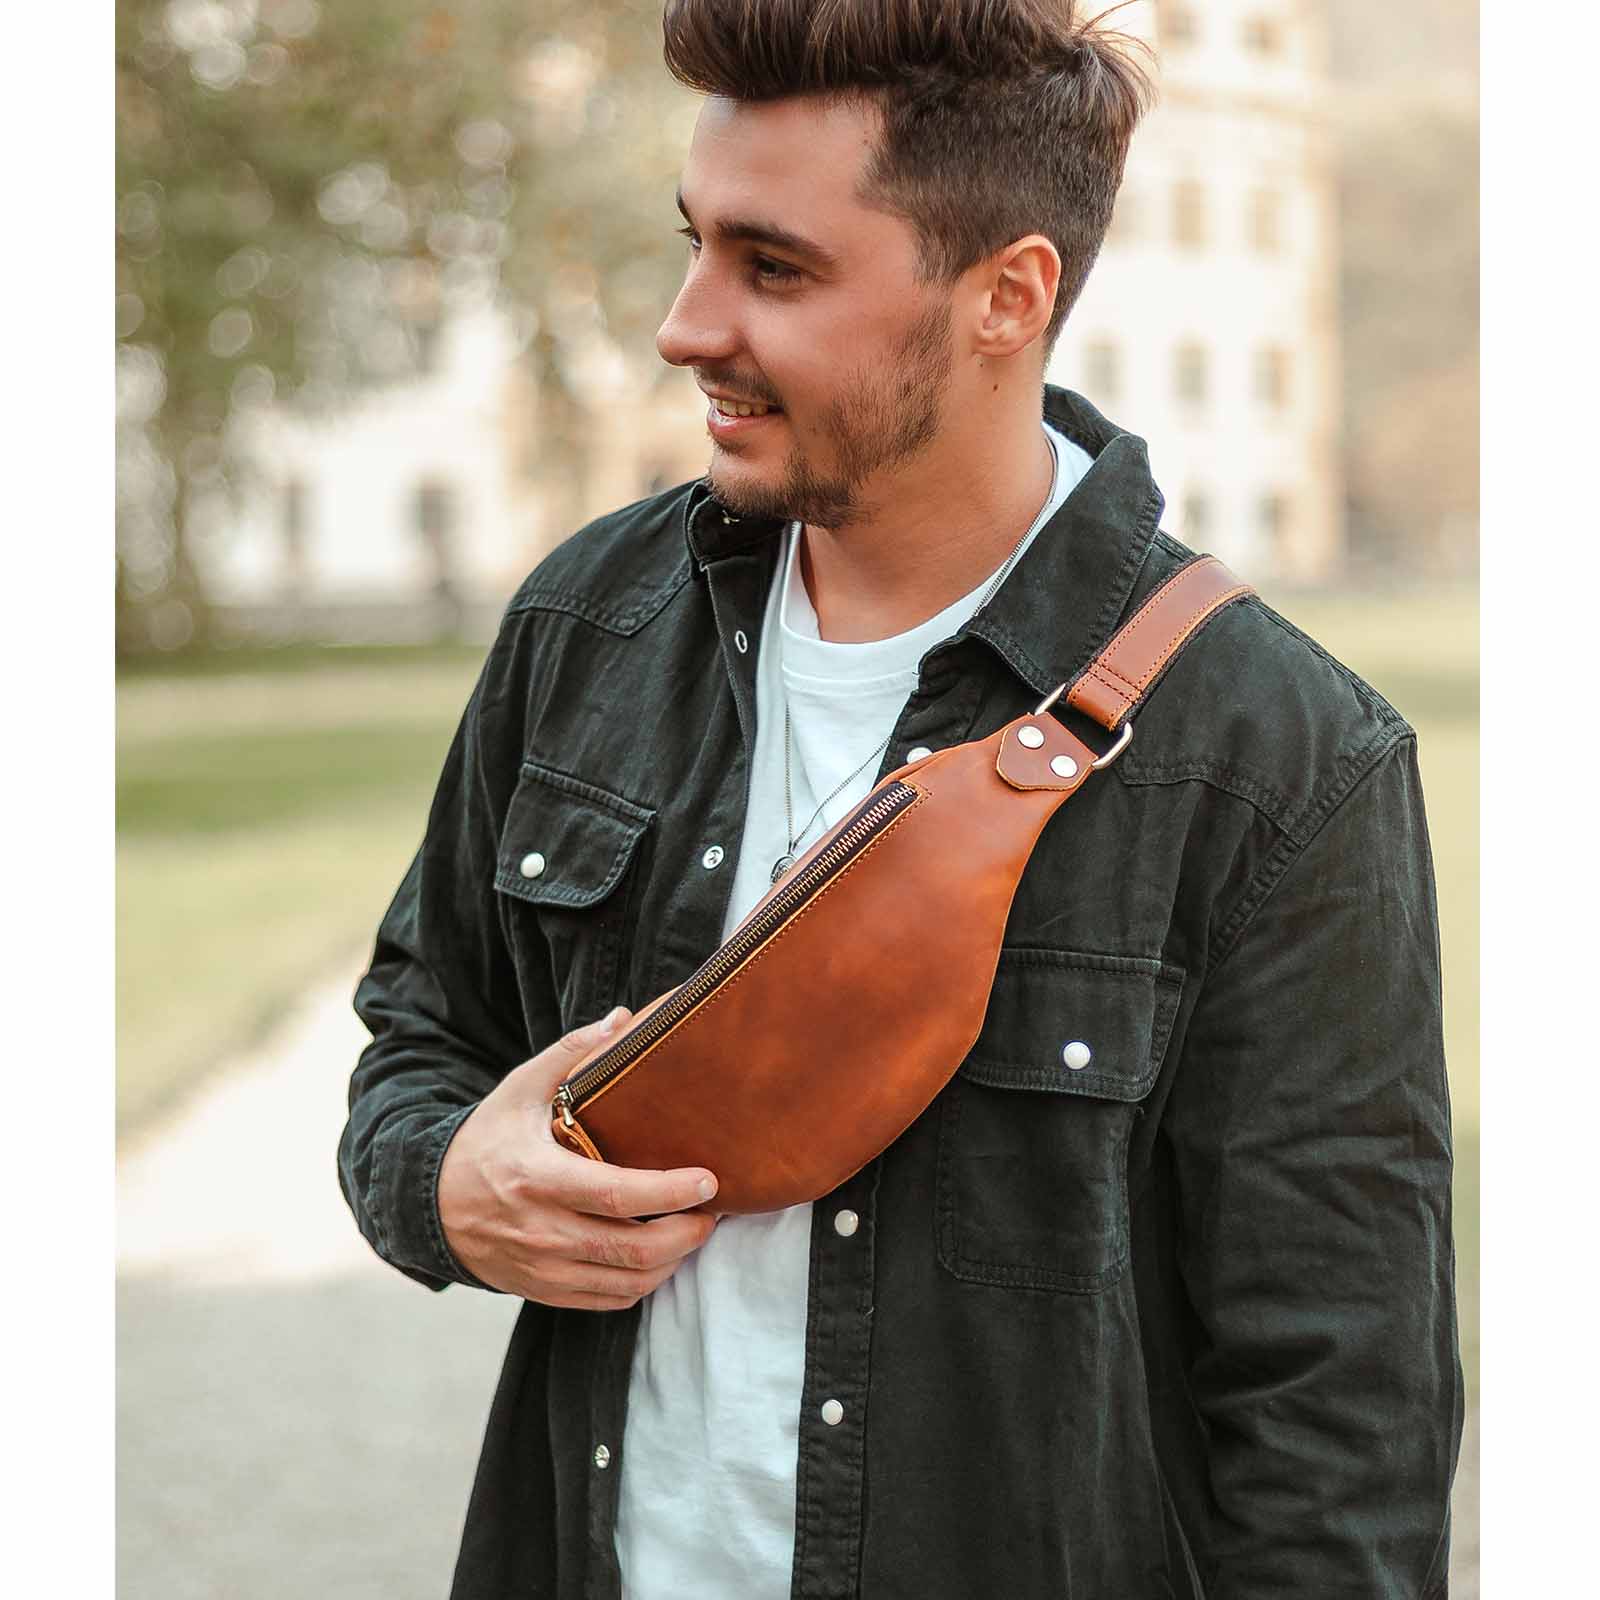 Genuine Leather Designer Belt Bag